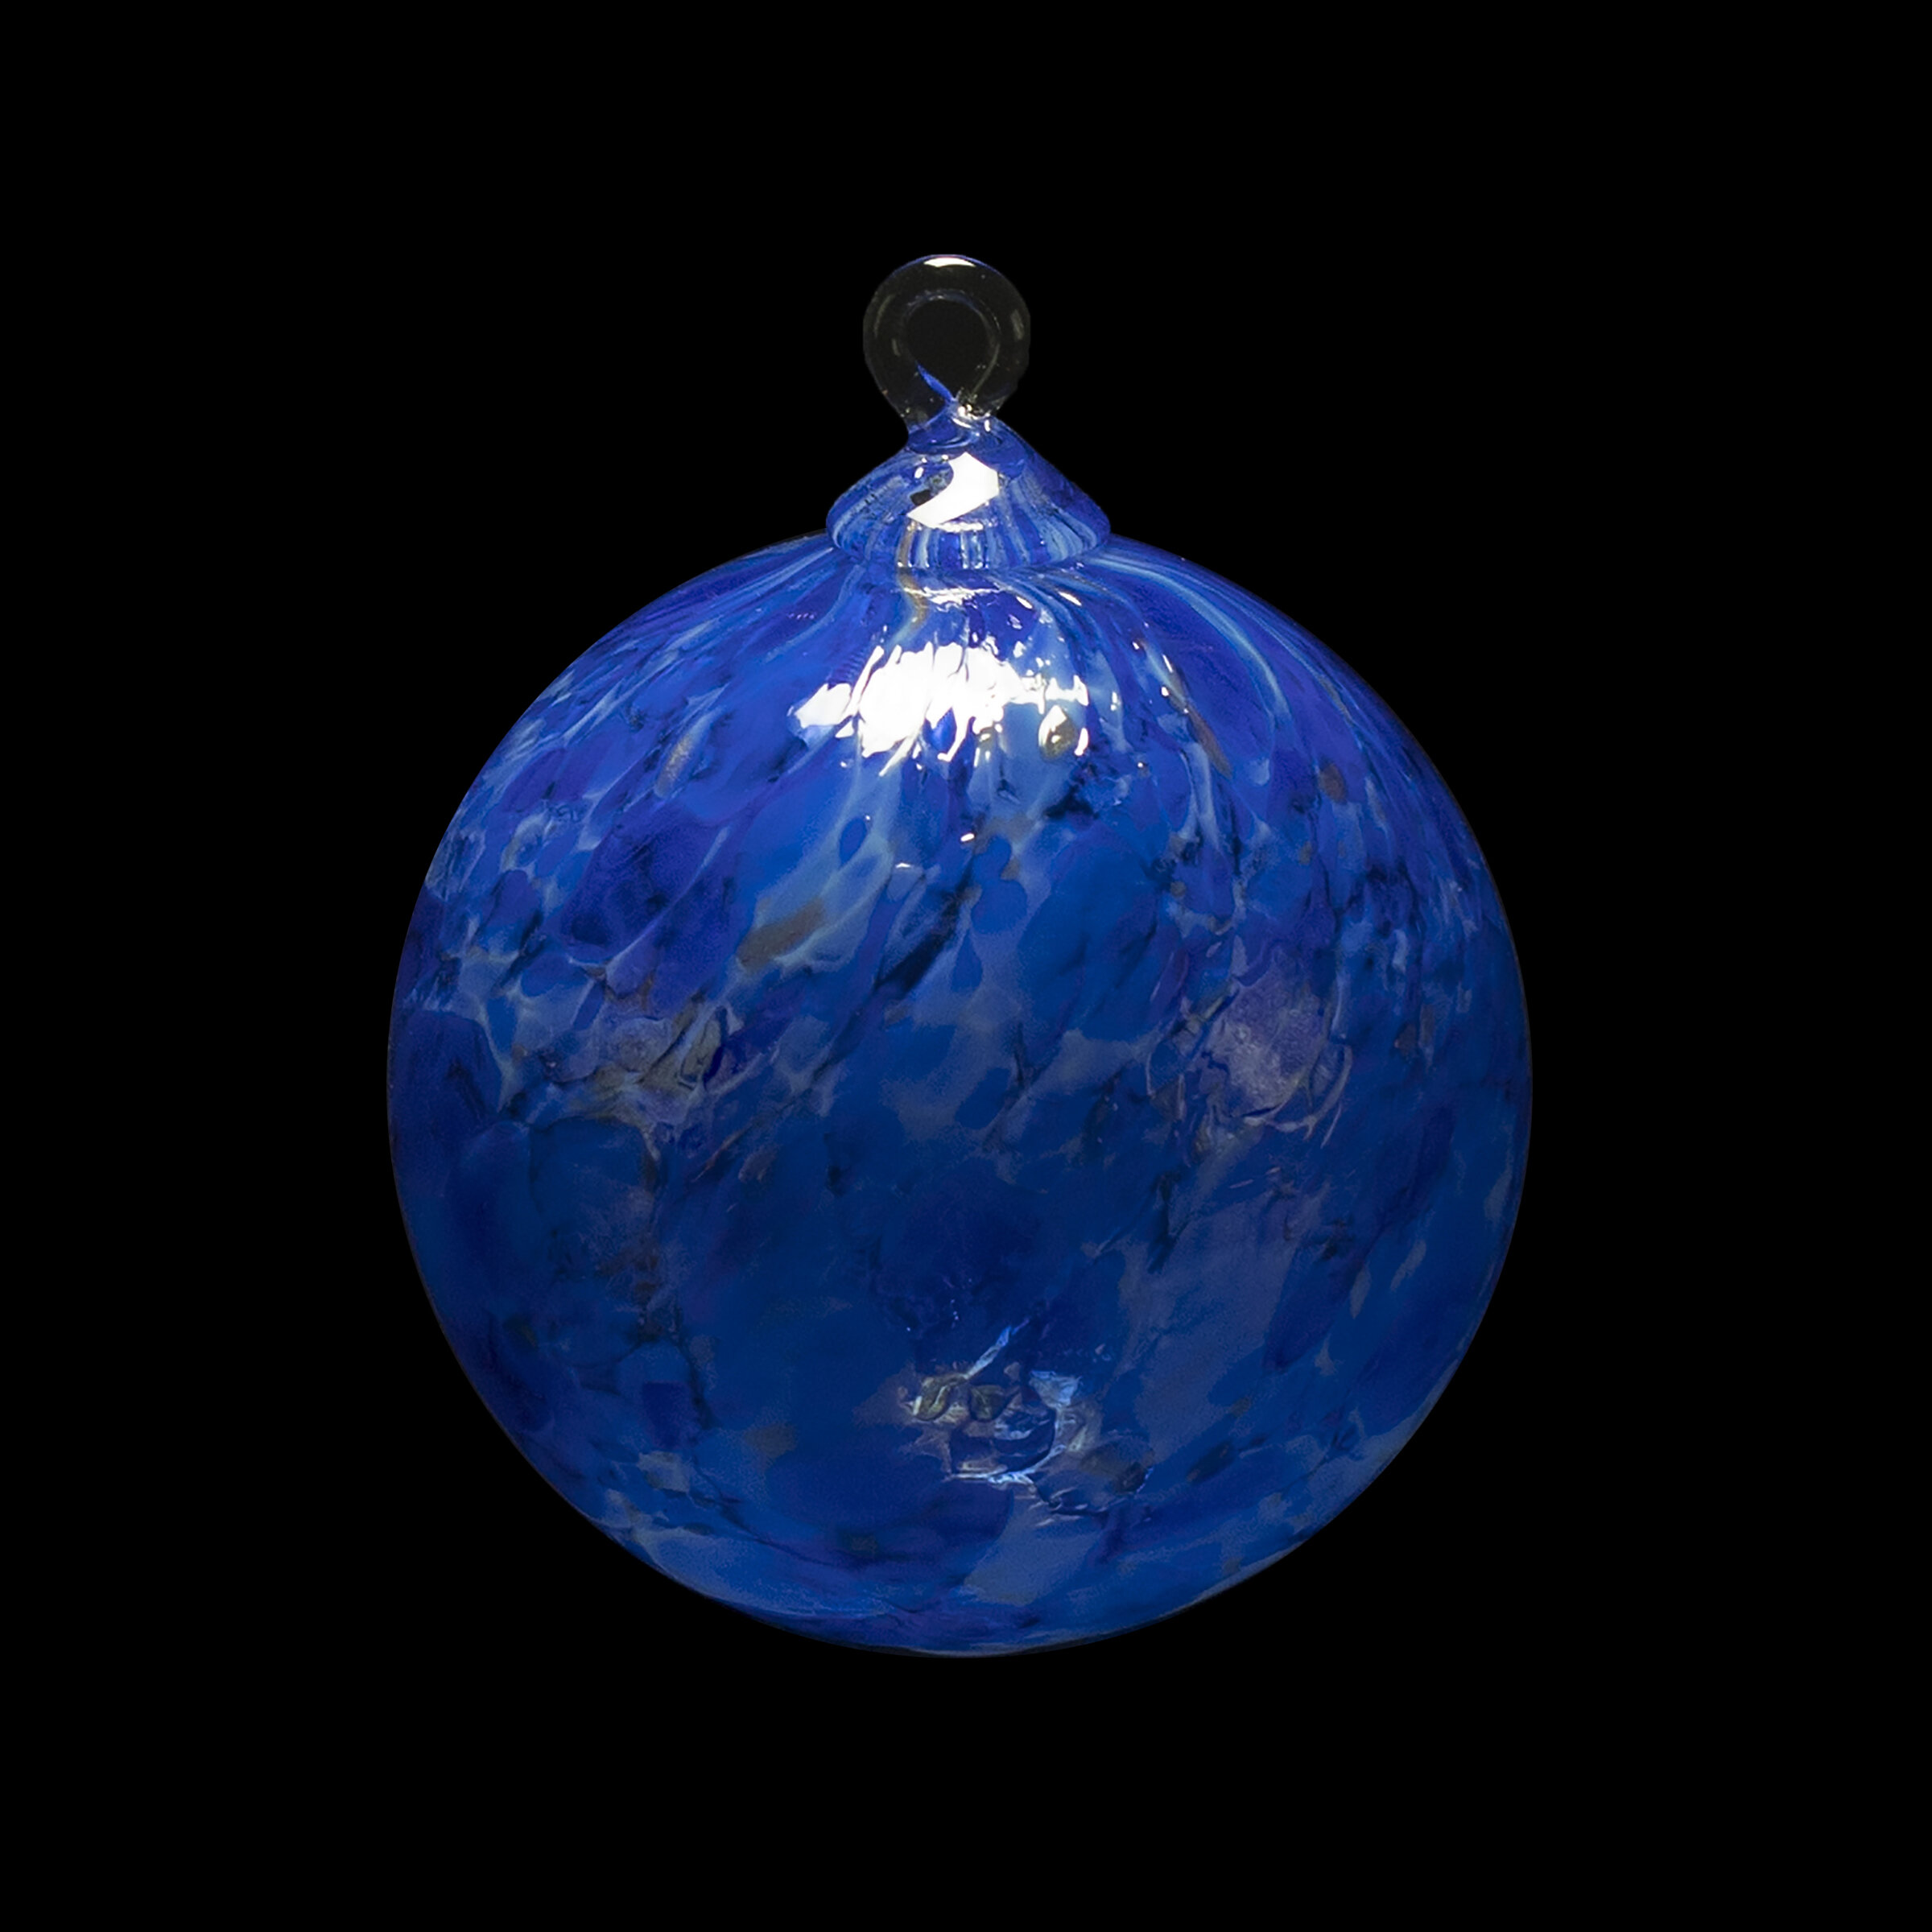 Blue gumball blown glass ornament.